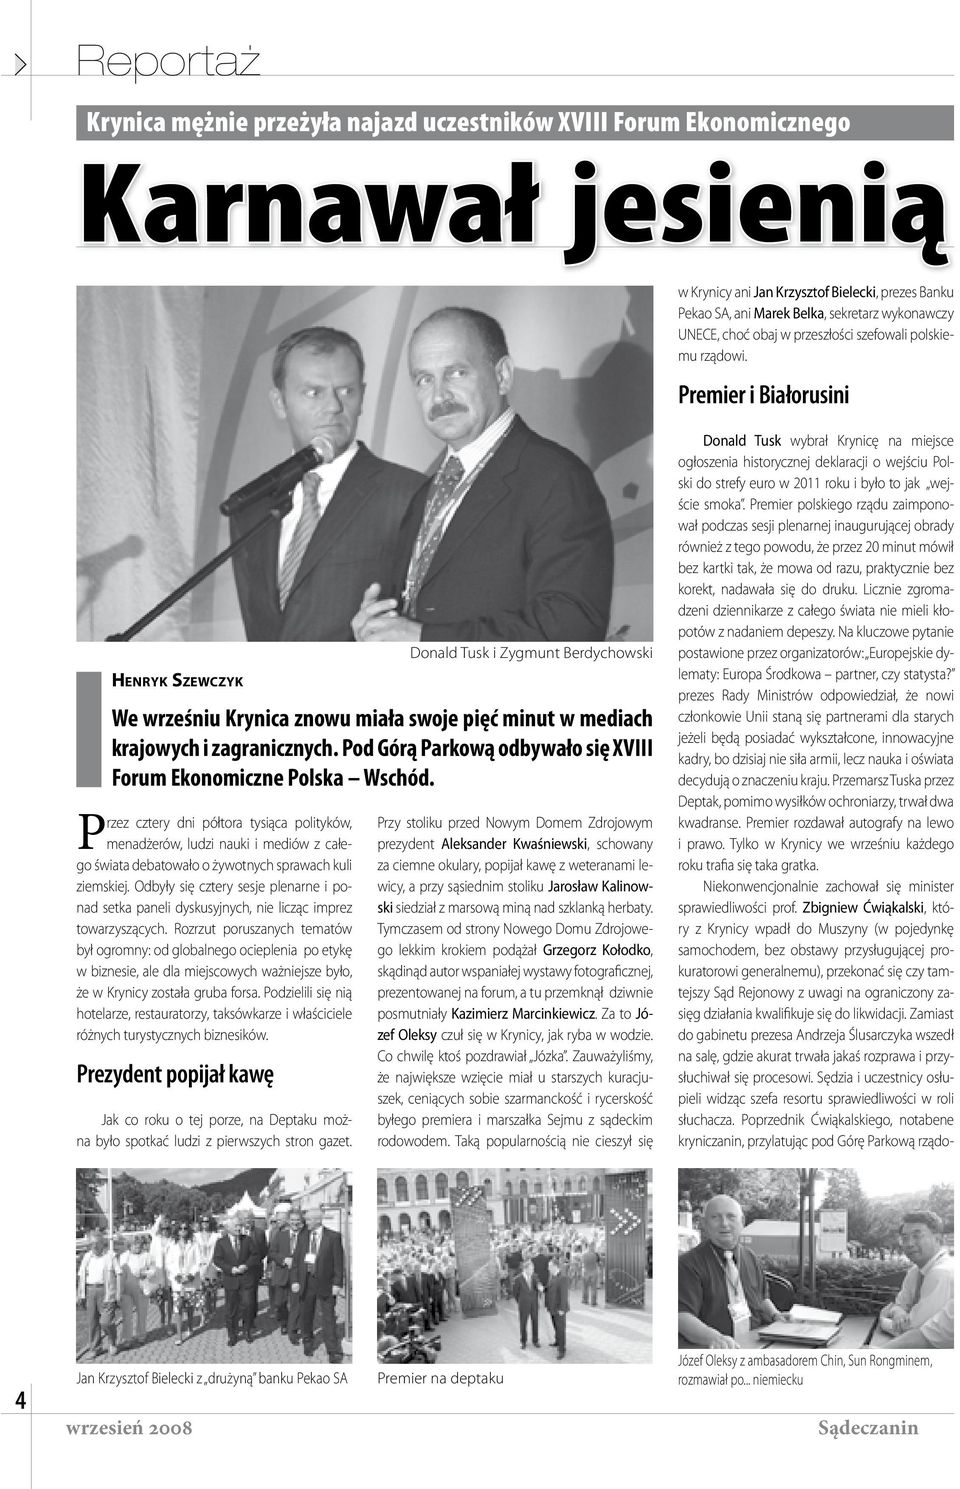 Premier i Białorusini HENRYK SZEWCZYK Przez cztery dni półtora tysiąca polityków, menadżerów, ludzi nauki i mediów z całego świata debatowało o żywotnych sprawach kuli ziemskiej.